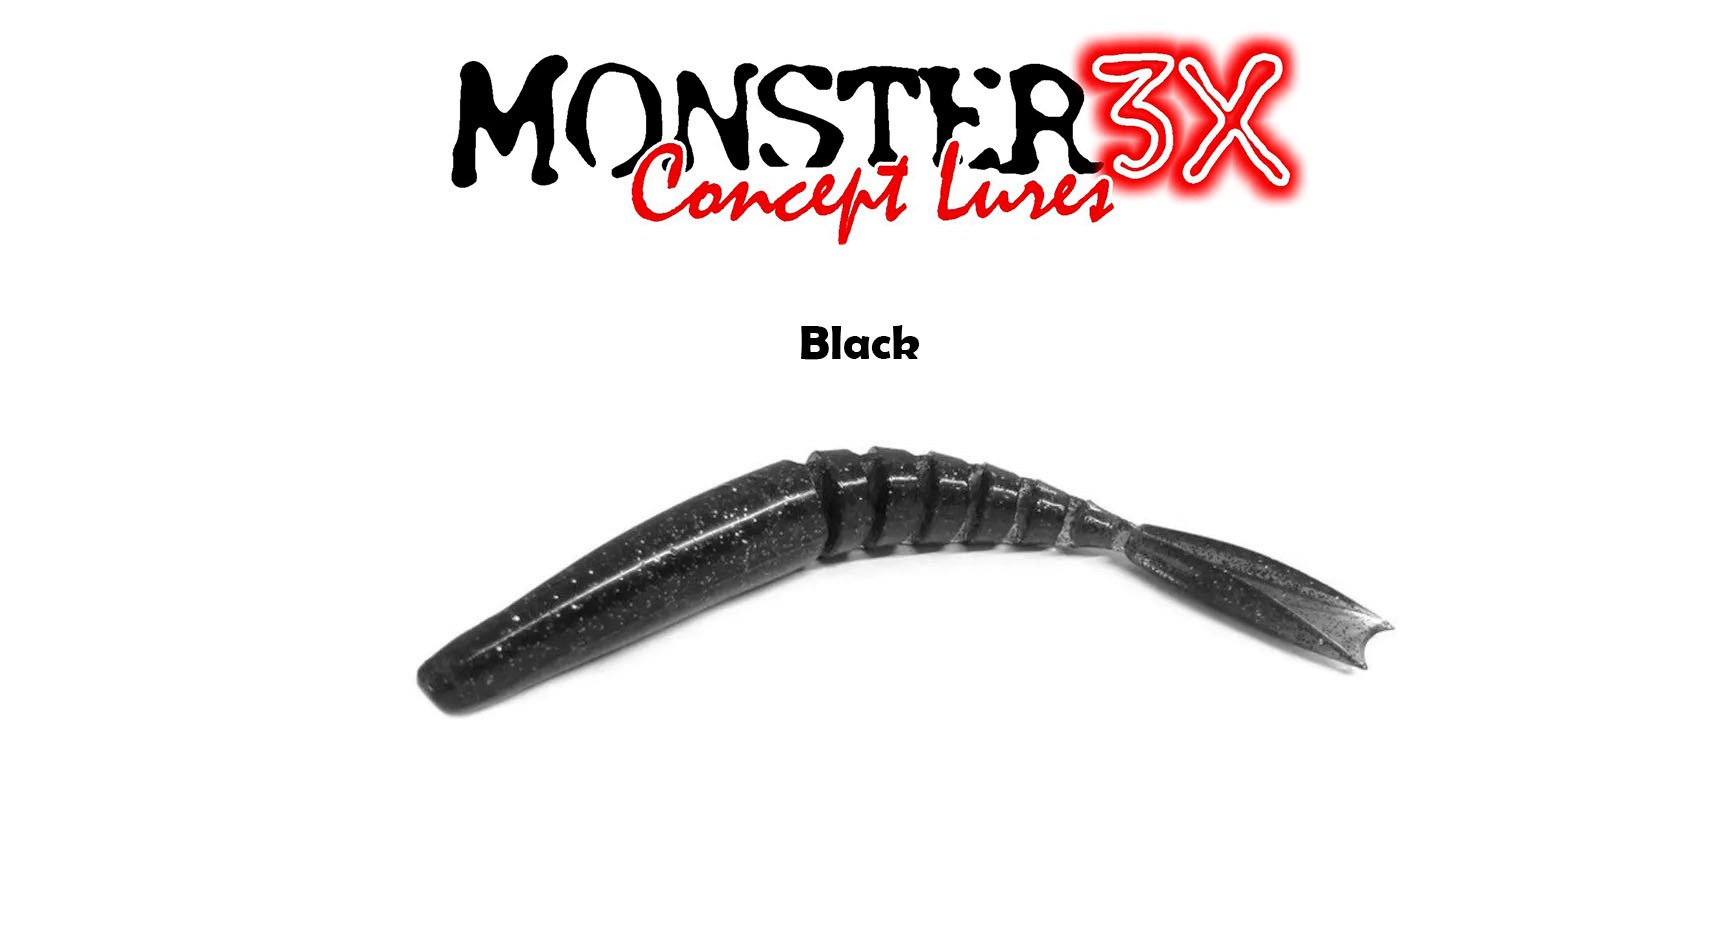 Isca Artificial Soft Monster 3X X-Swim (12 cm) 3 Unidades - Várias Cores